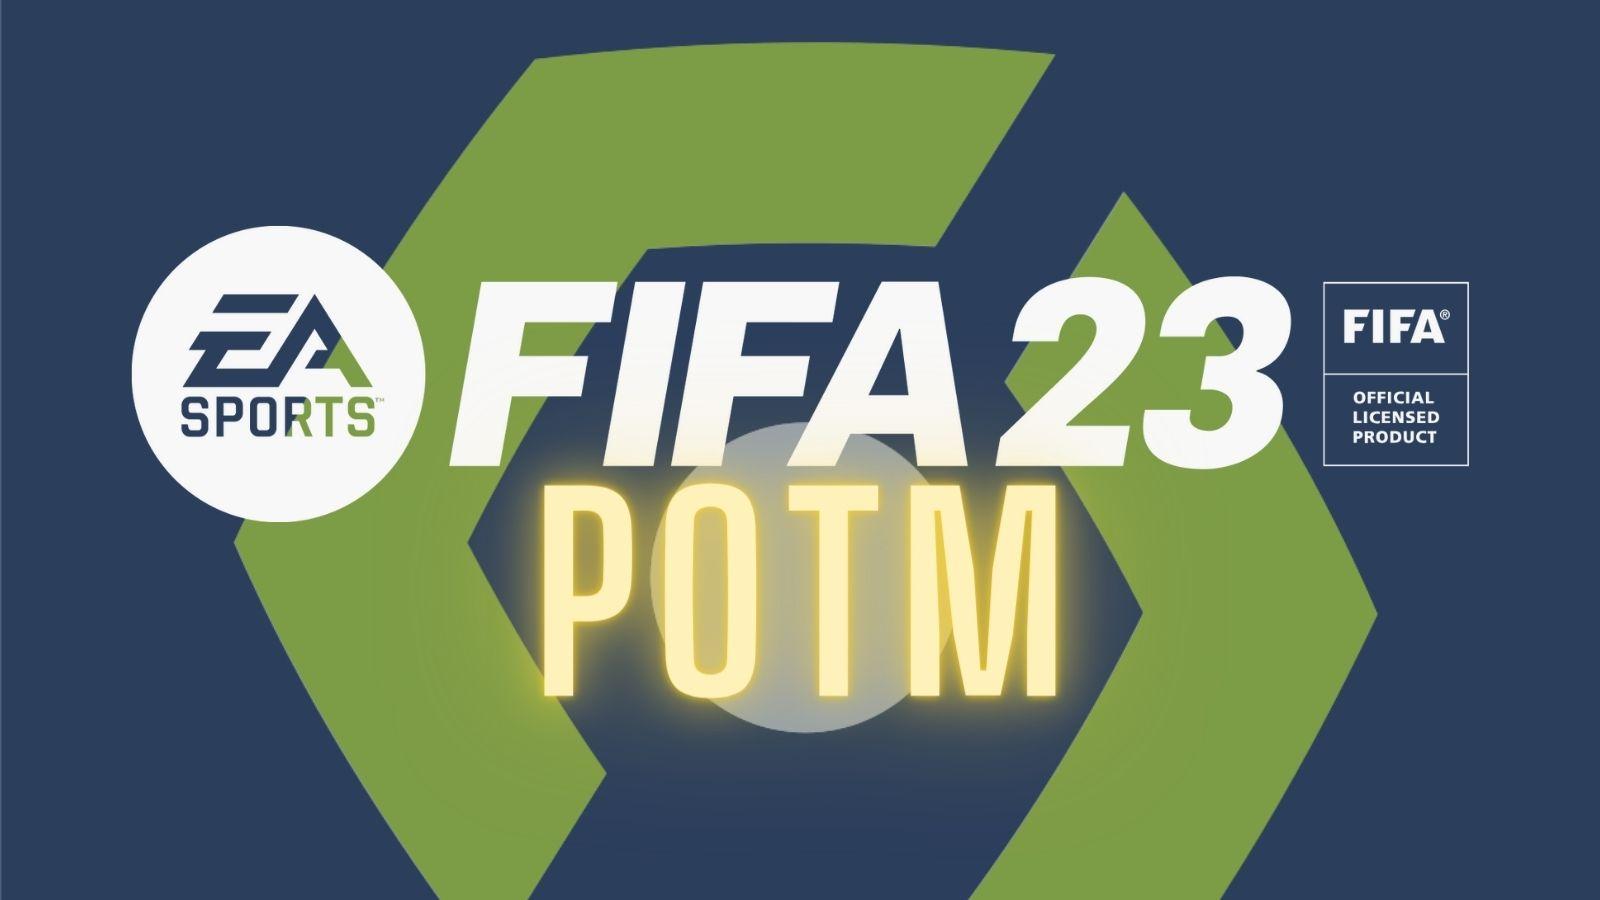 FIFA 23 Ligue 1 POTM